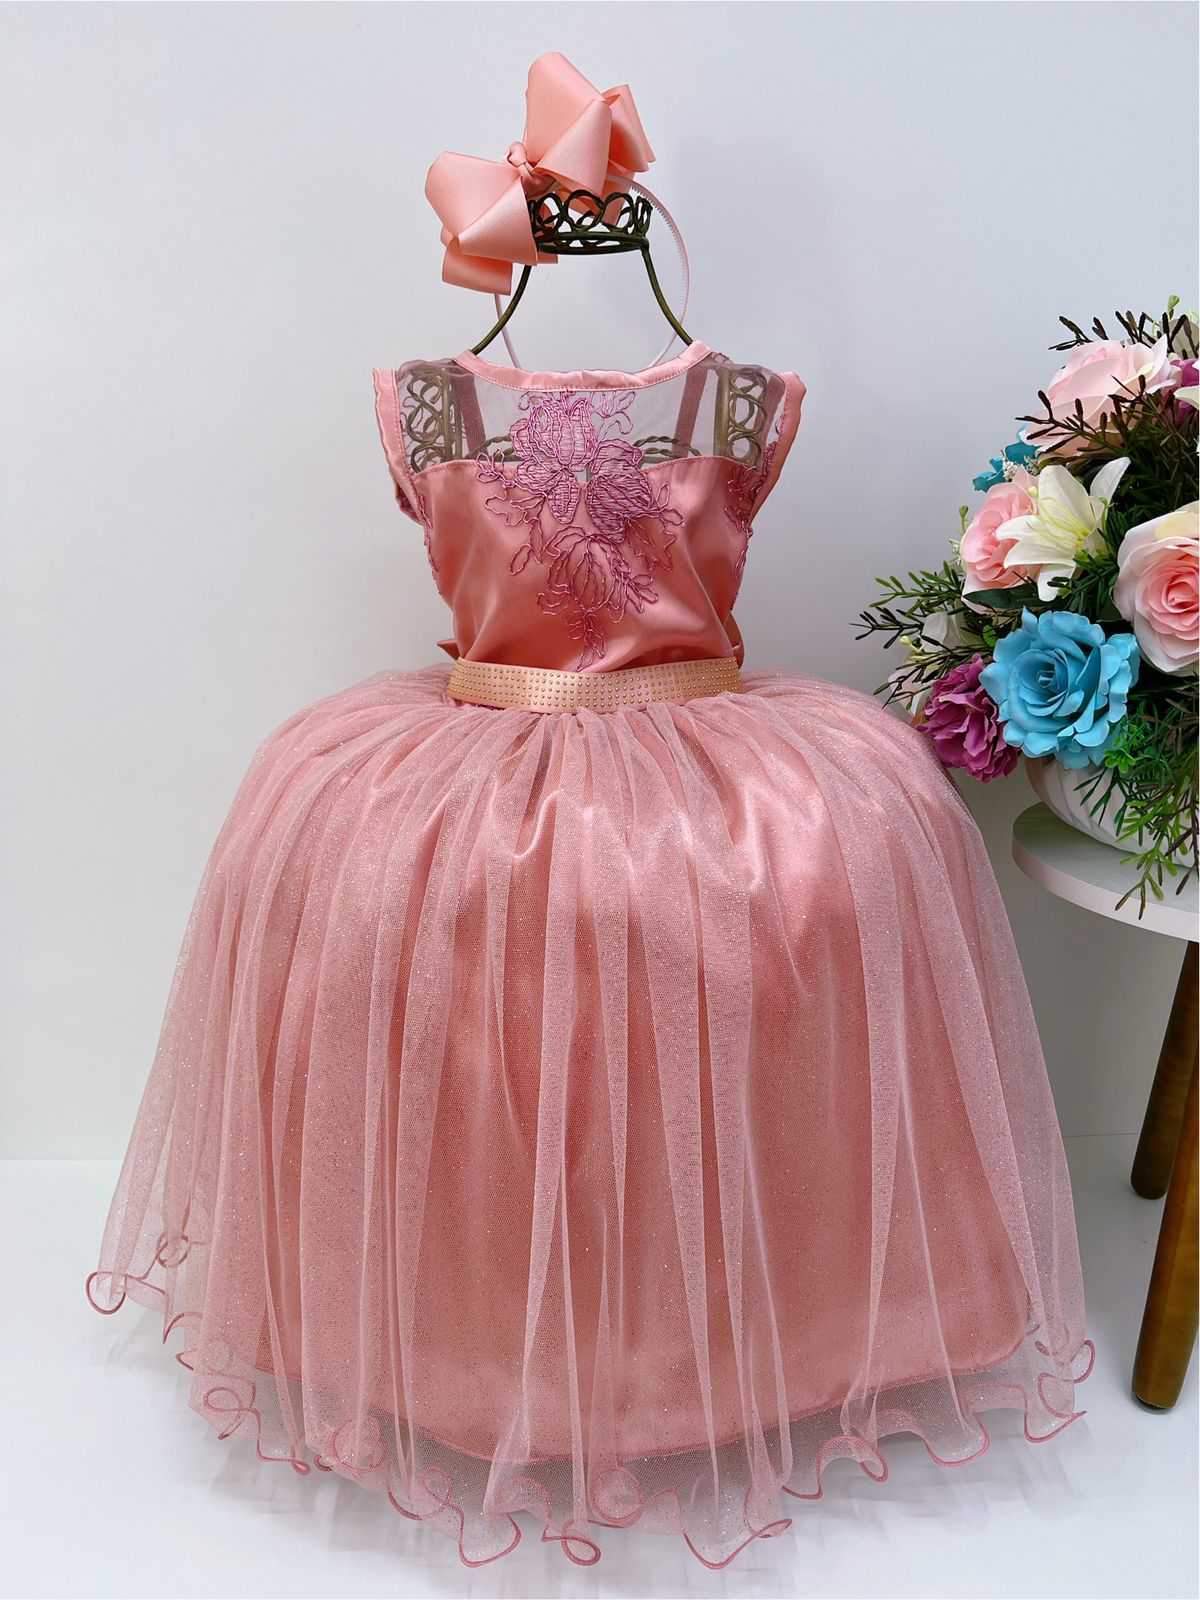 Vestido Infantil Rosé Renda e Tule com Brilho Damas Honra